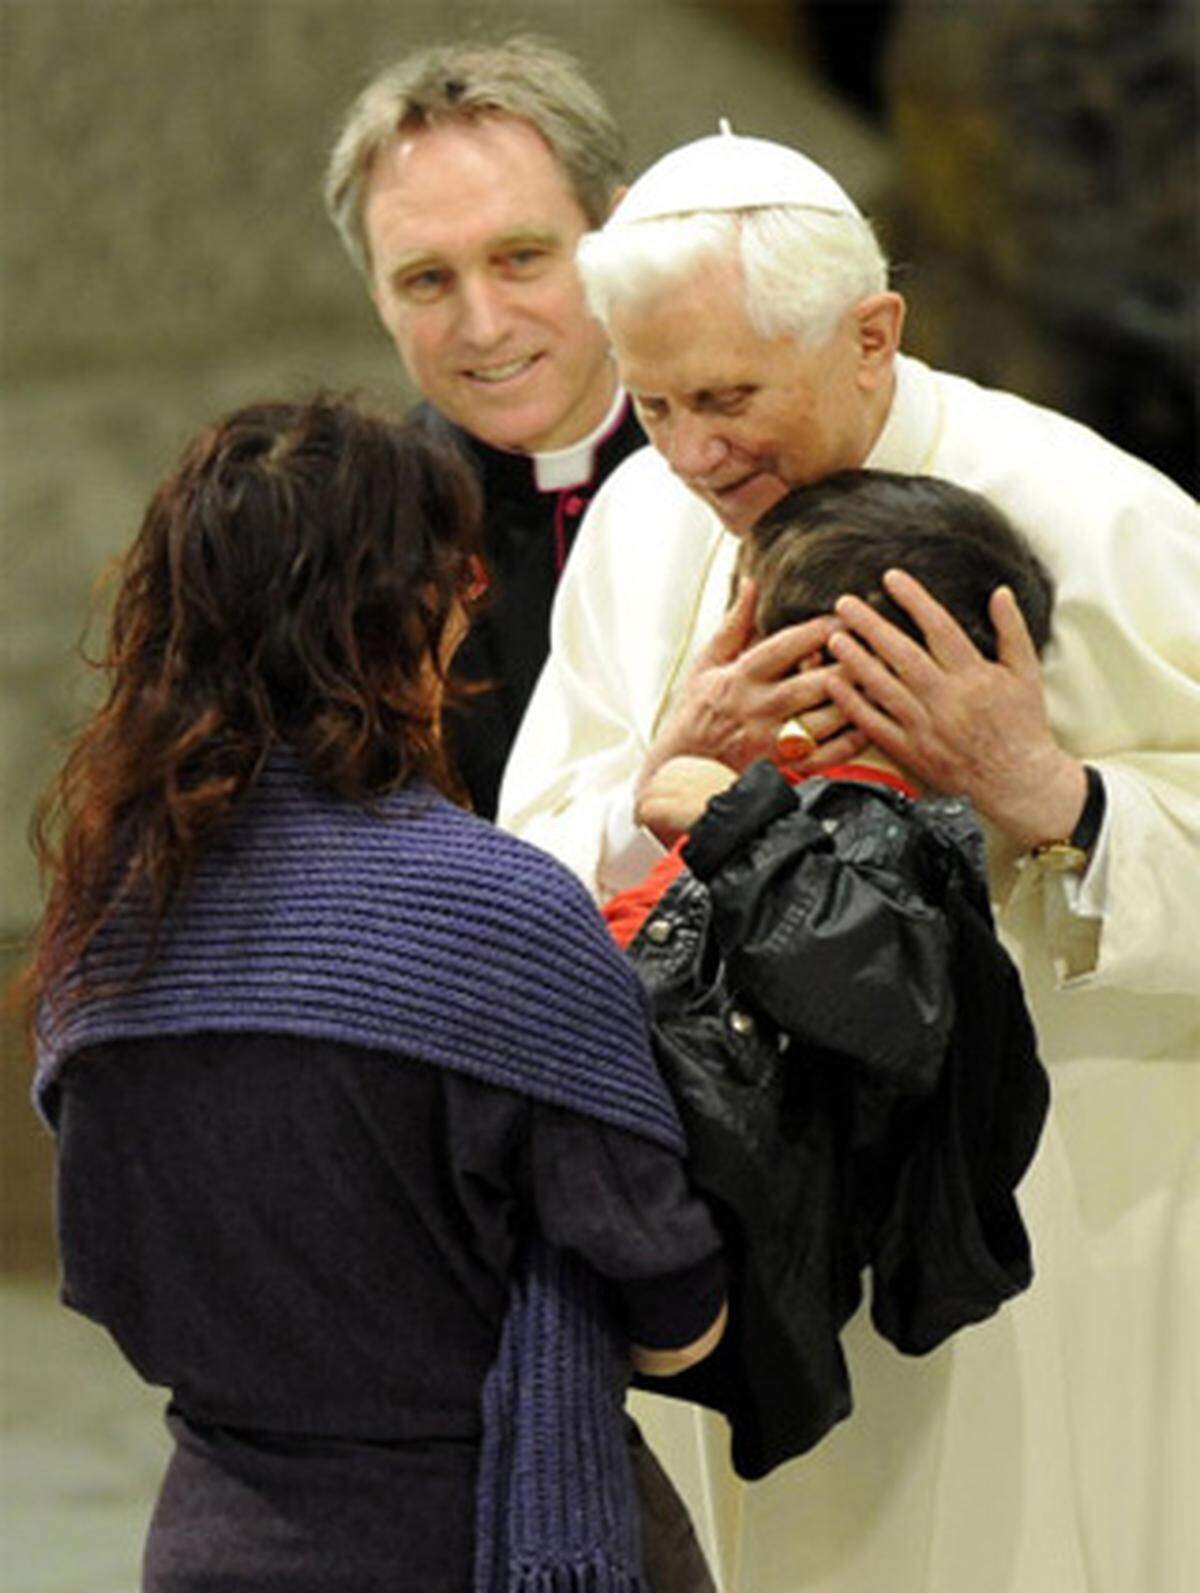 Papst Benedikt XVI. hat bei der Generalaudienz am Mittwoch an den Holocaust-Gedenktag erinnert: "Die erschütternden Berichte der Überlebenden zeigen der Welt, zu welchen abscheulichen Verbrechen der menschenverachtende Größenwahn und Rassenhass der Nazi-Ideologie in Deutschland geführt hat"